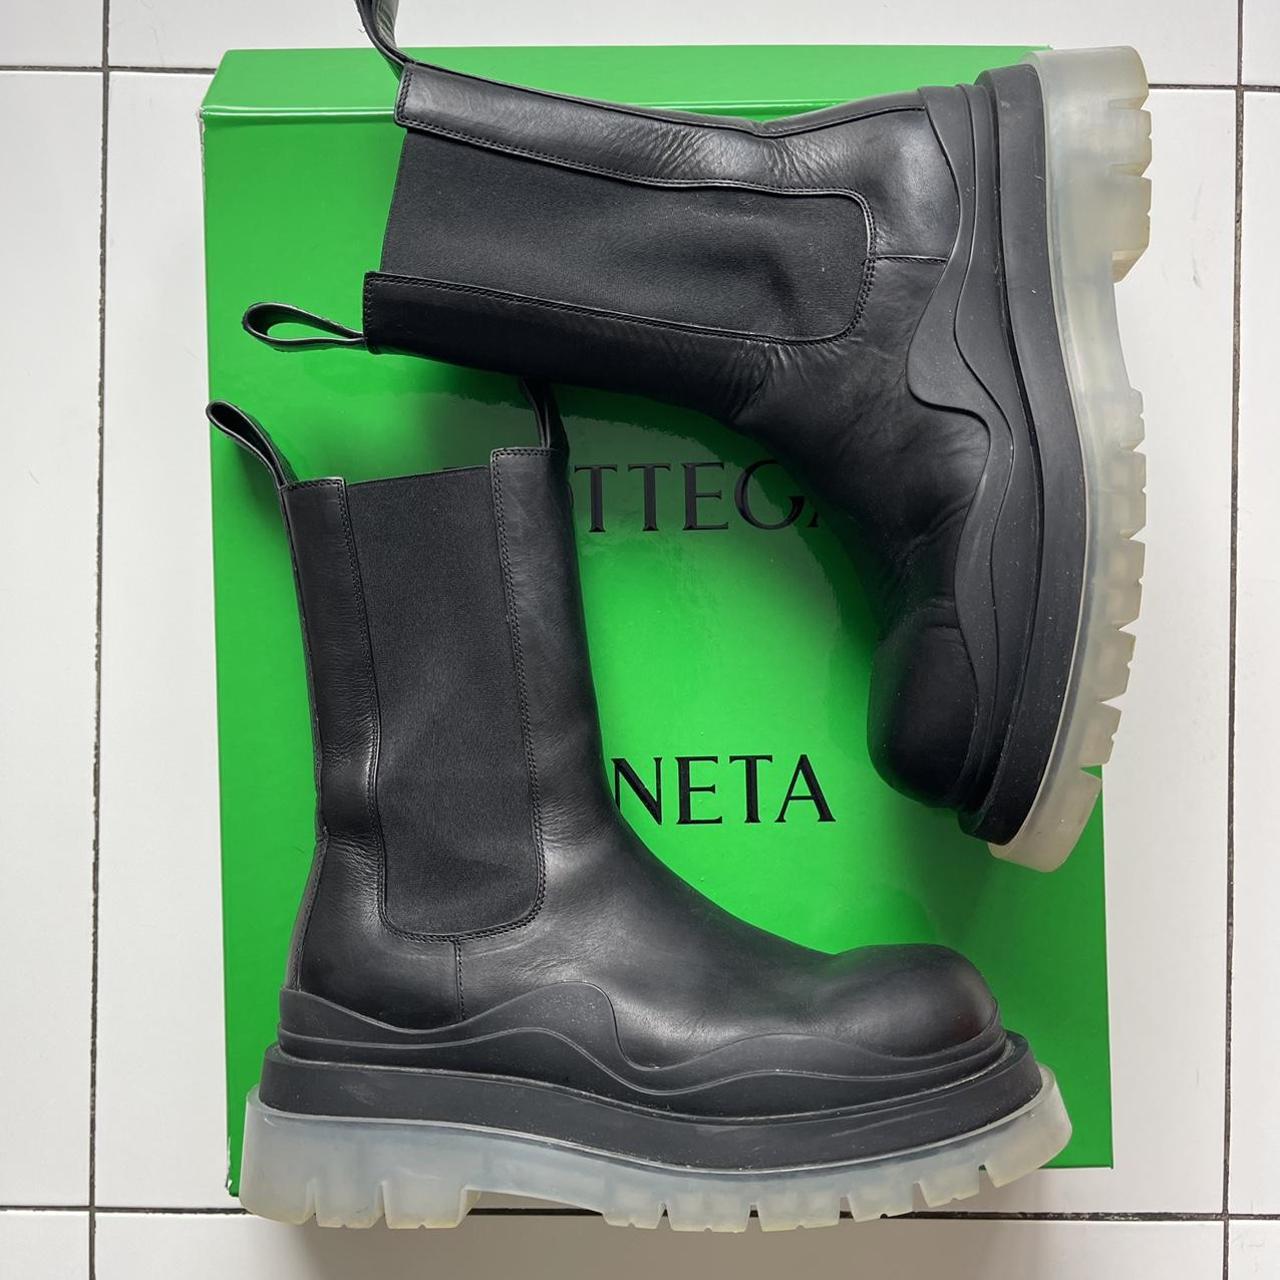 Bottega Veneta mens tire boots Size 43 Excellent... - Depop